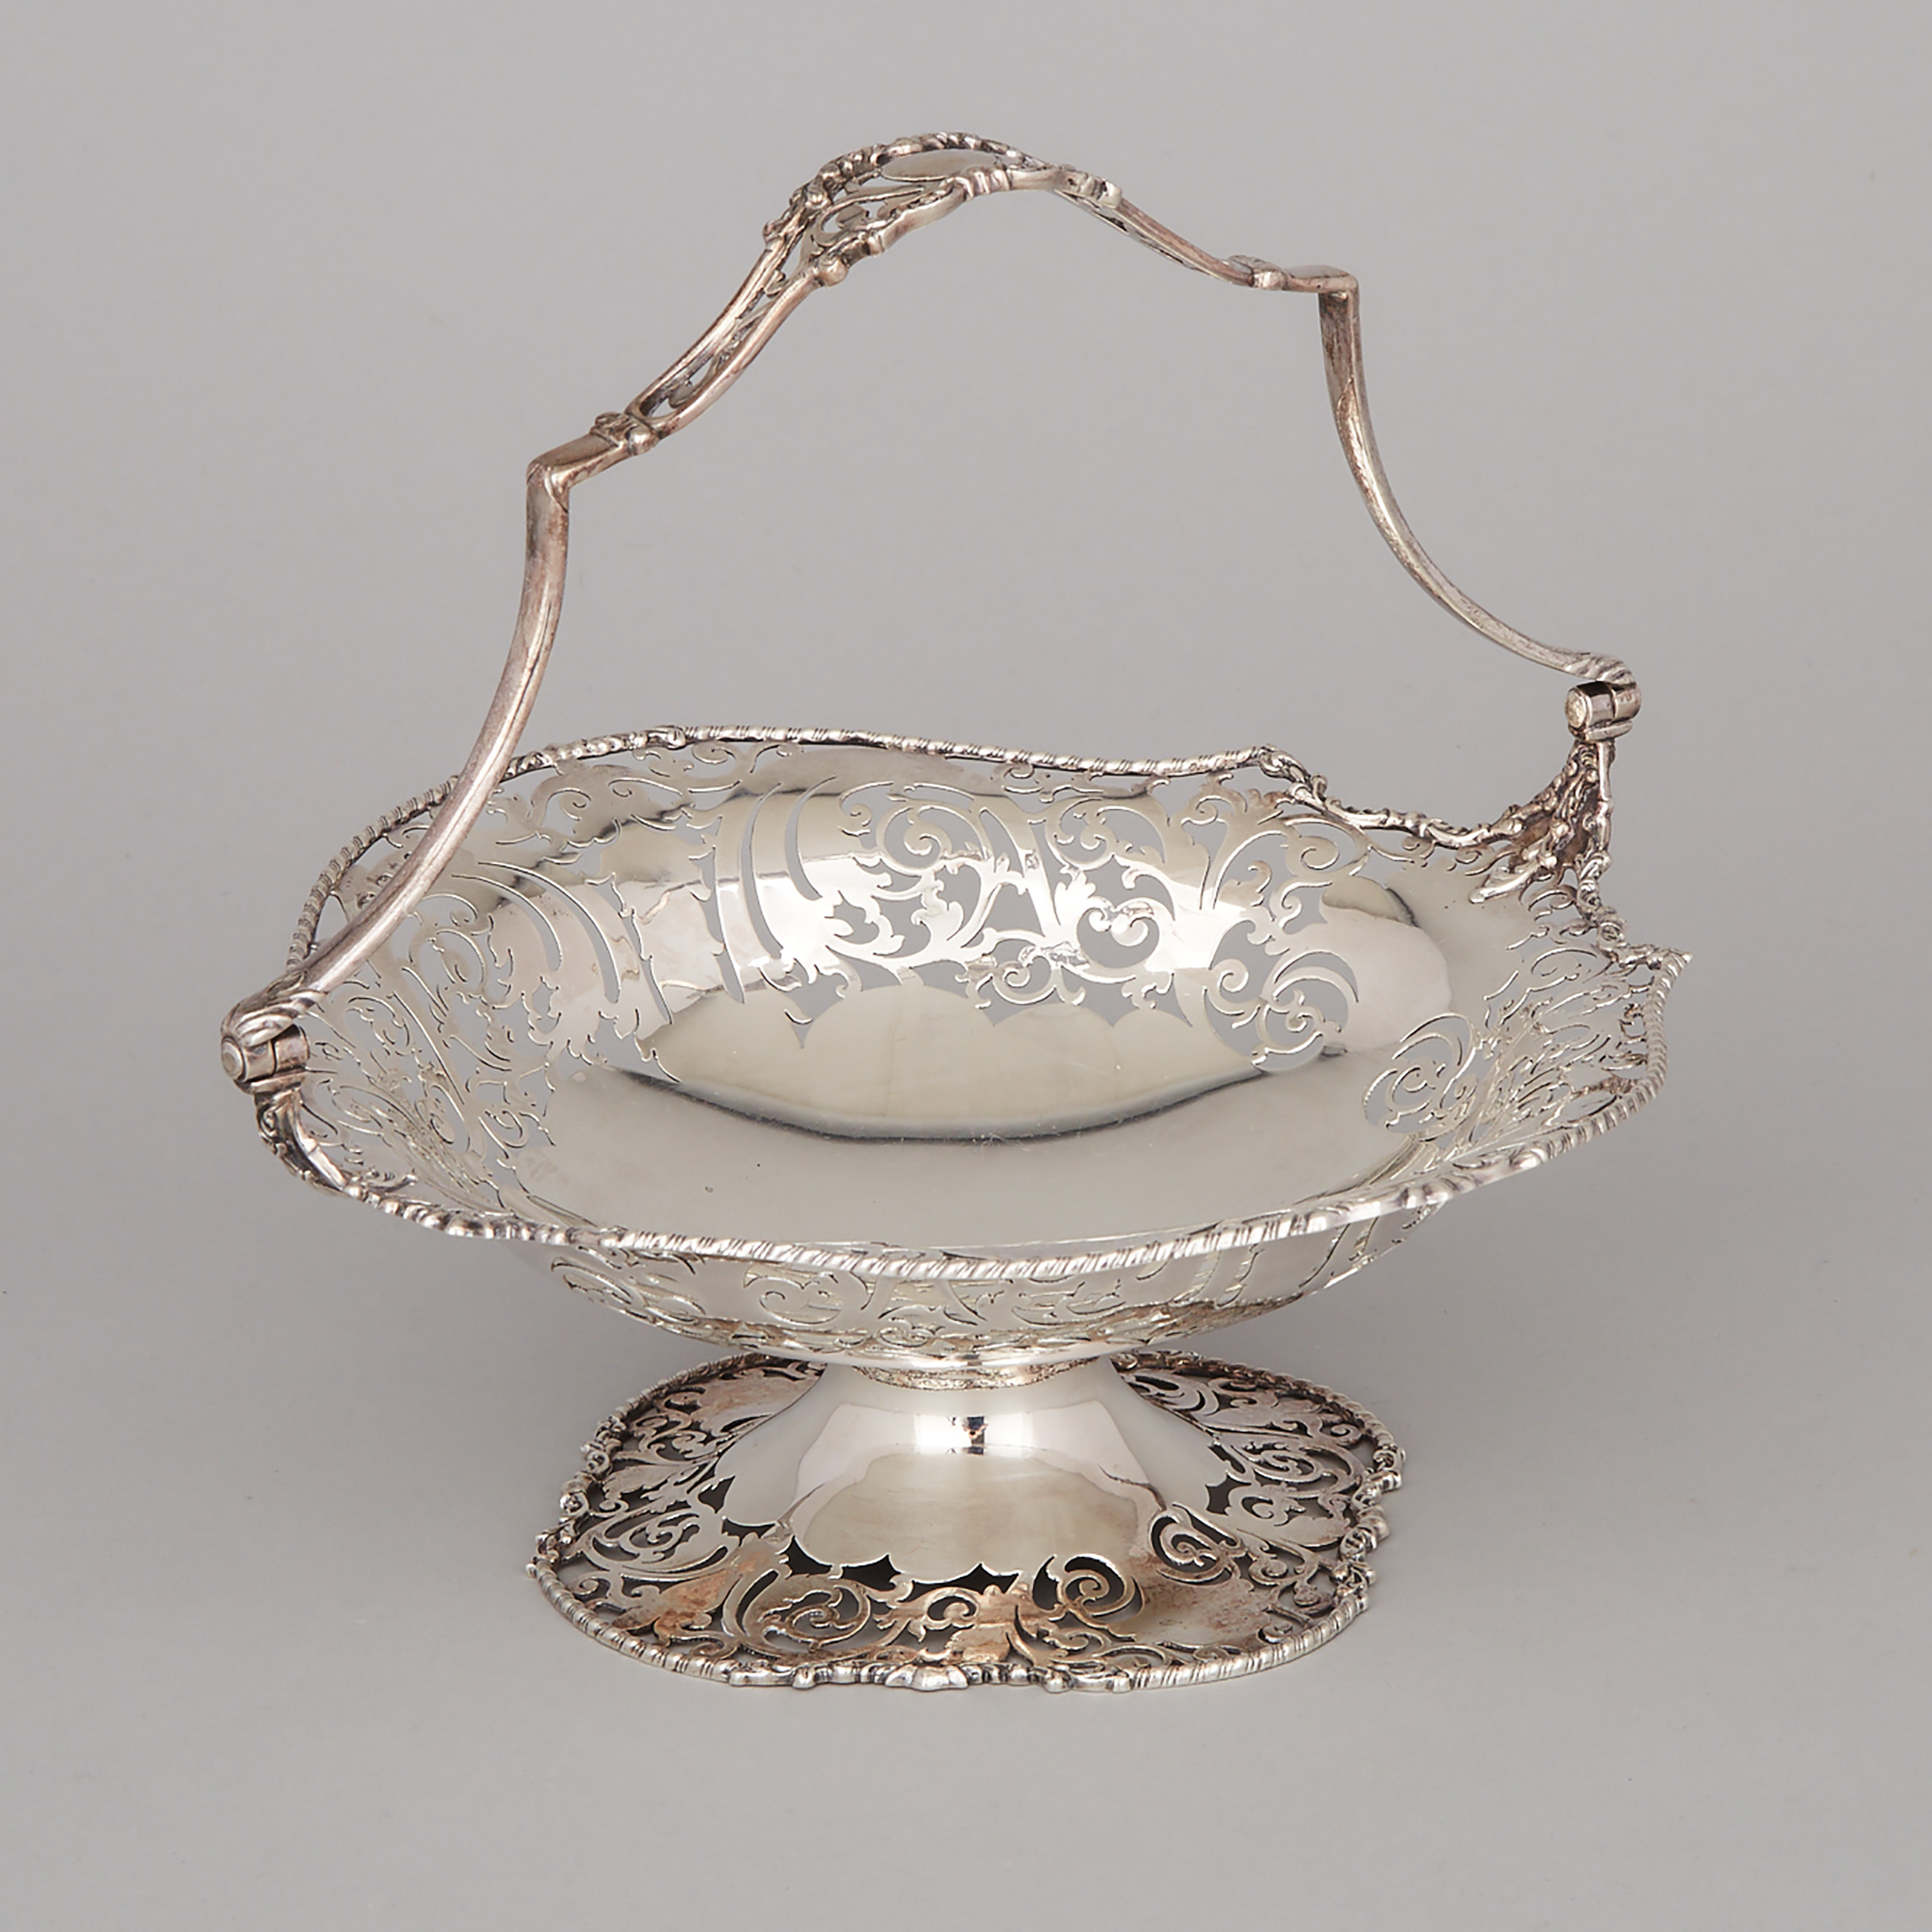 English Silver Pierced Cake Basket, David Fullerton, London, 1923